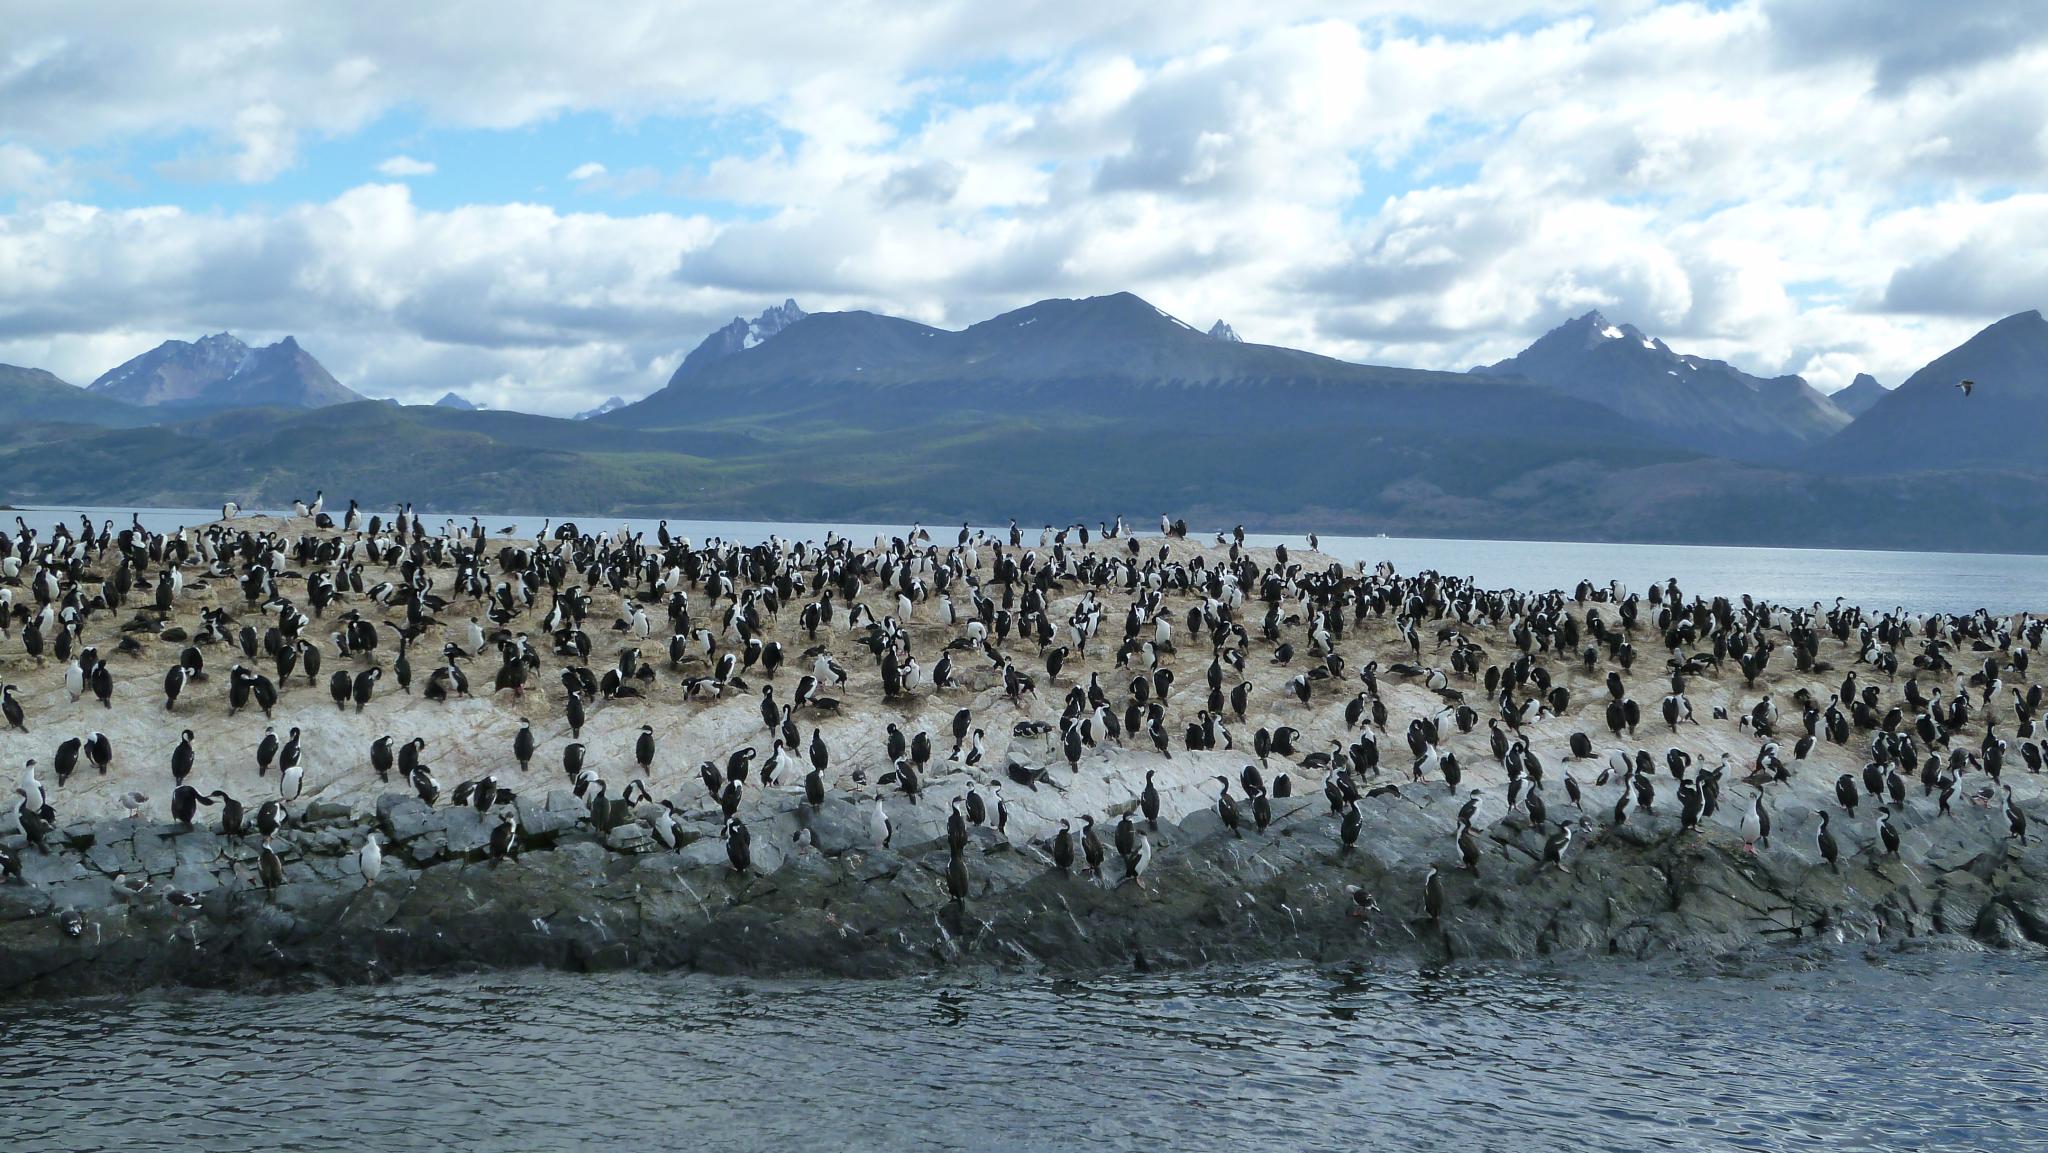 <p>El nuevo informe del IPCC sobre los océanos advirtió sobre los impactos del calentamiento global en biomas específicos como la región Sub-Antártica de América del Sur (imagen: <a href="https://flickr.com/photos/vtpoly/8282360128/">VT Polywoda</a>)</p>